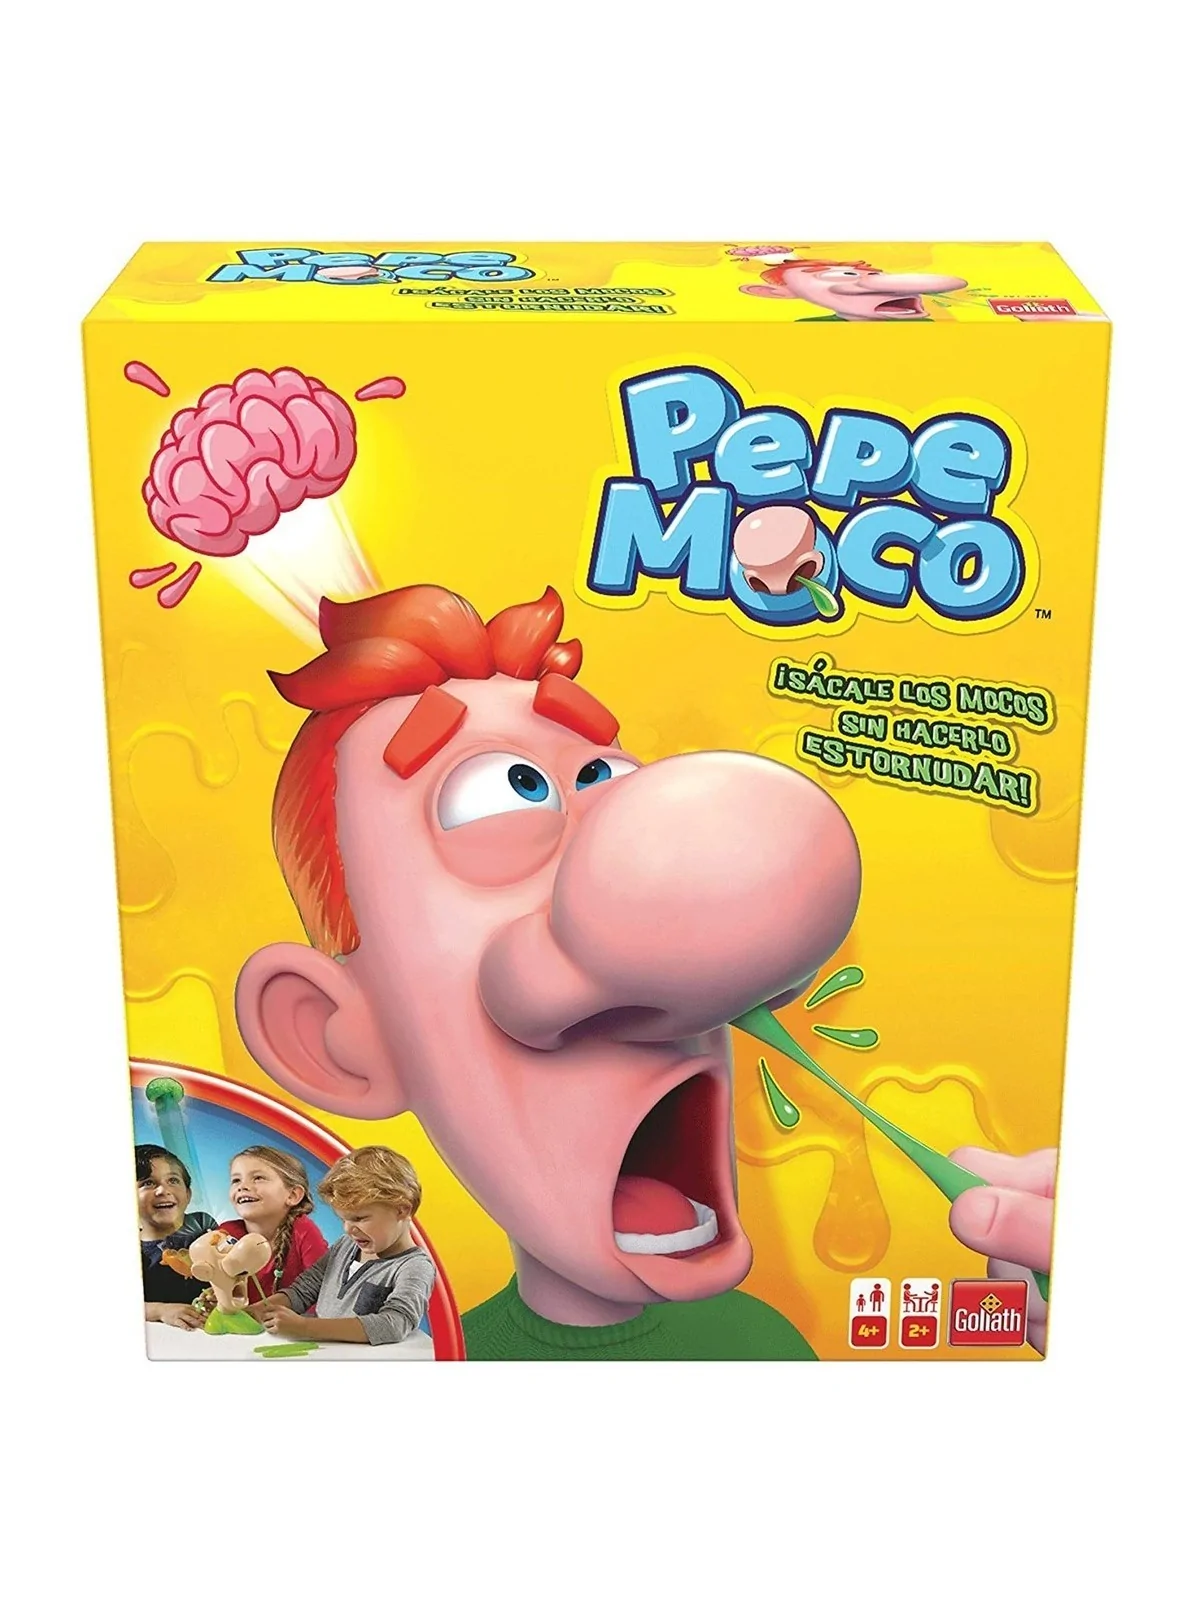 Comprar Pepe Moco barato al mejor precio 25,20 € de Goliath bv